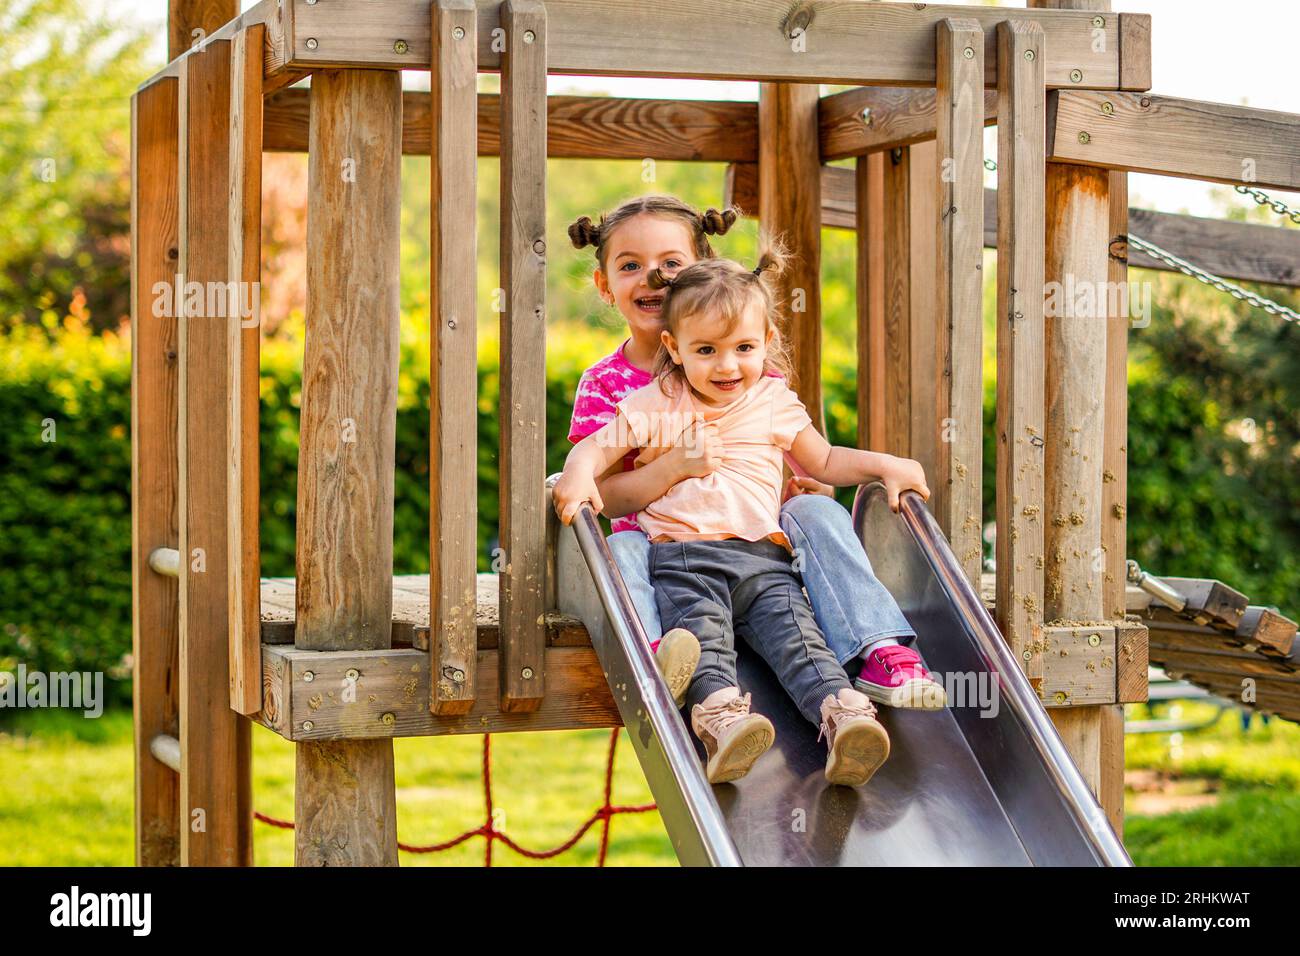 Le sorelle scivolano insieme in un parco giochi - i bambini si divertono insieme Foto Stock